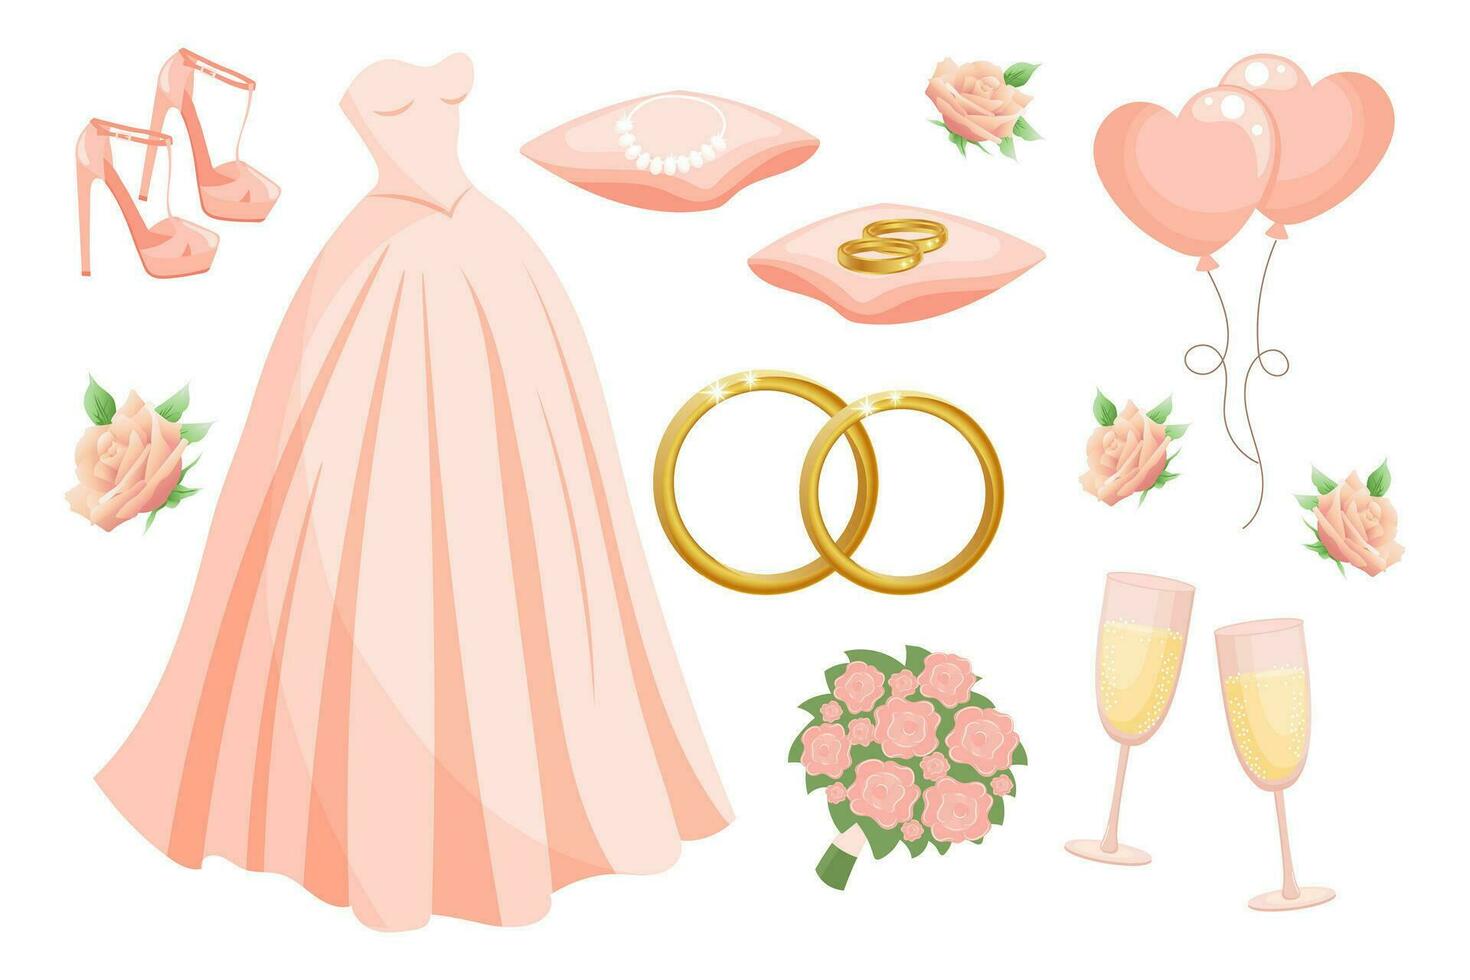 Boda conjunto de ropa y accesorios para el novia, Boda vestido, anillos, collar, zapatos, lentes de champán, nupcial ramo, globos diseño elementos, vector